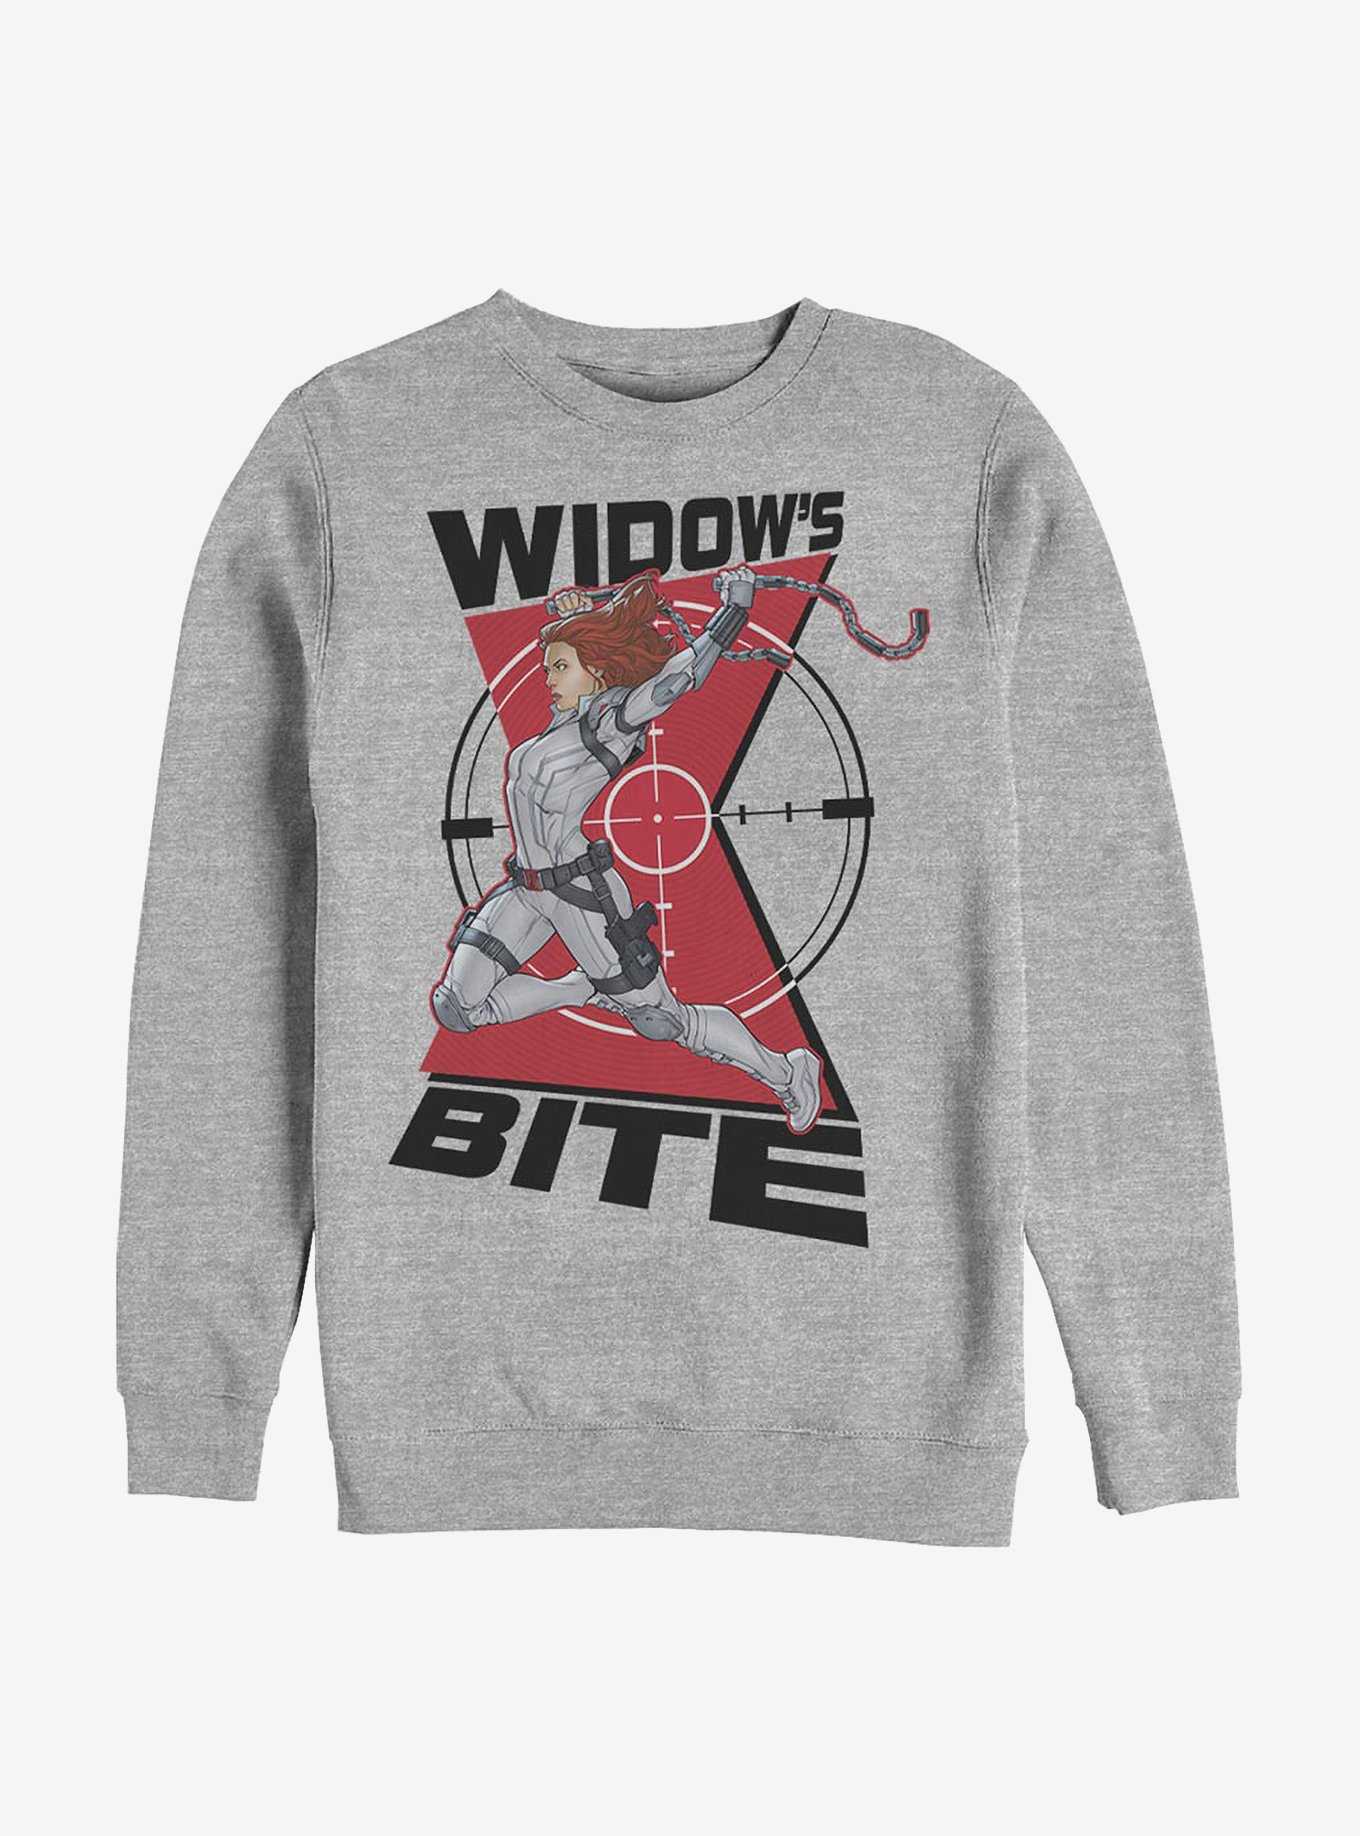 Marvel Black Widow Widow Bite Crew Sweatshirt, , hi-res